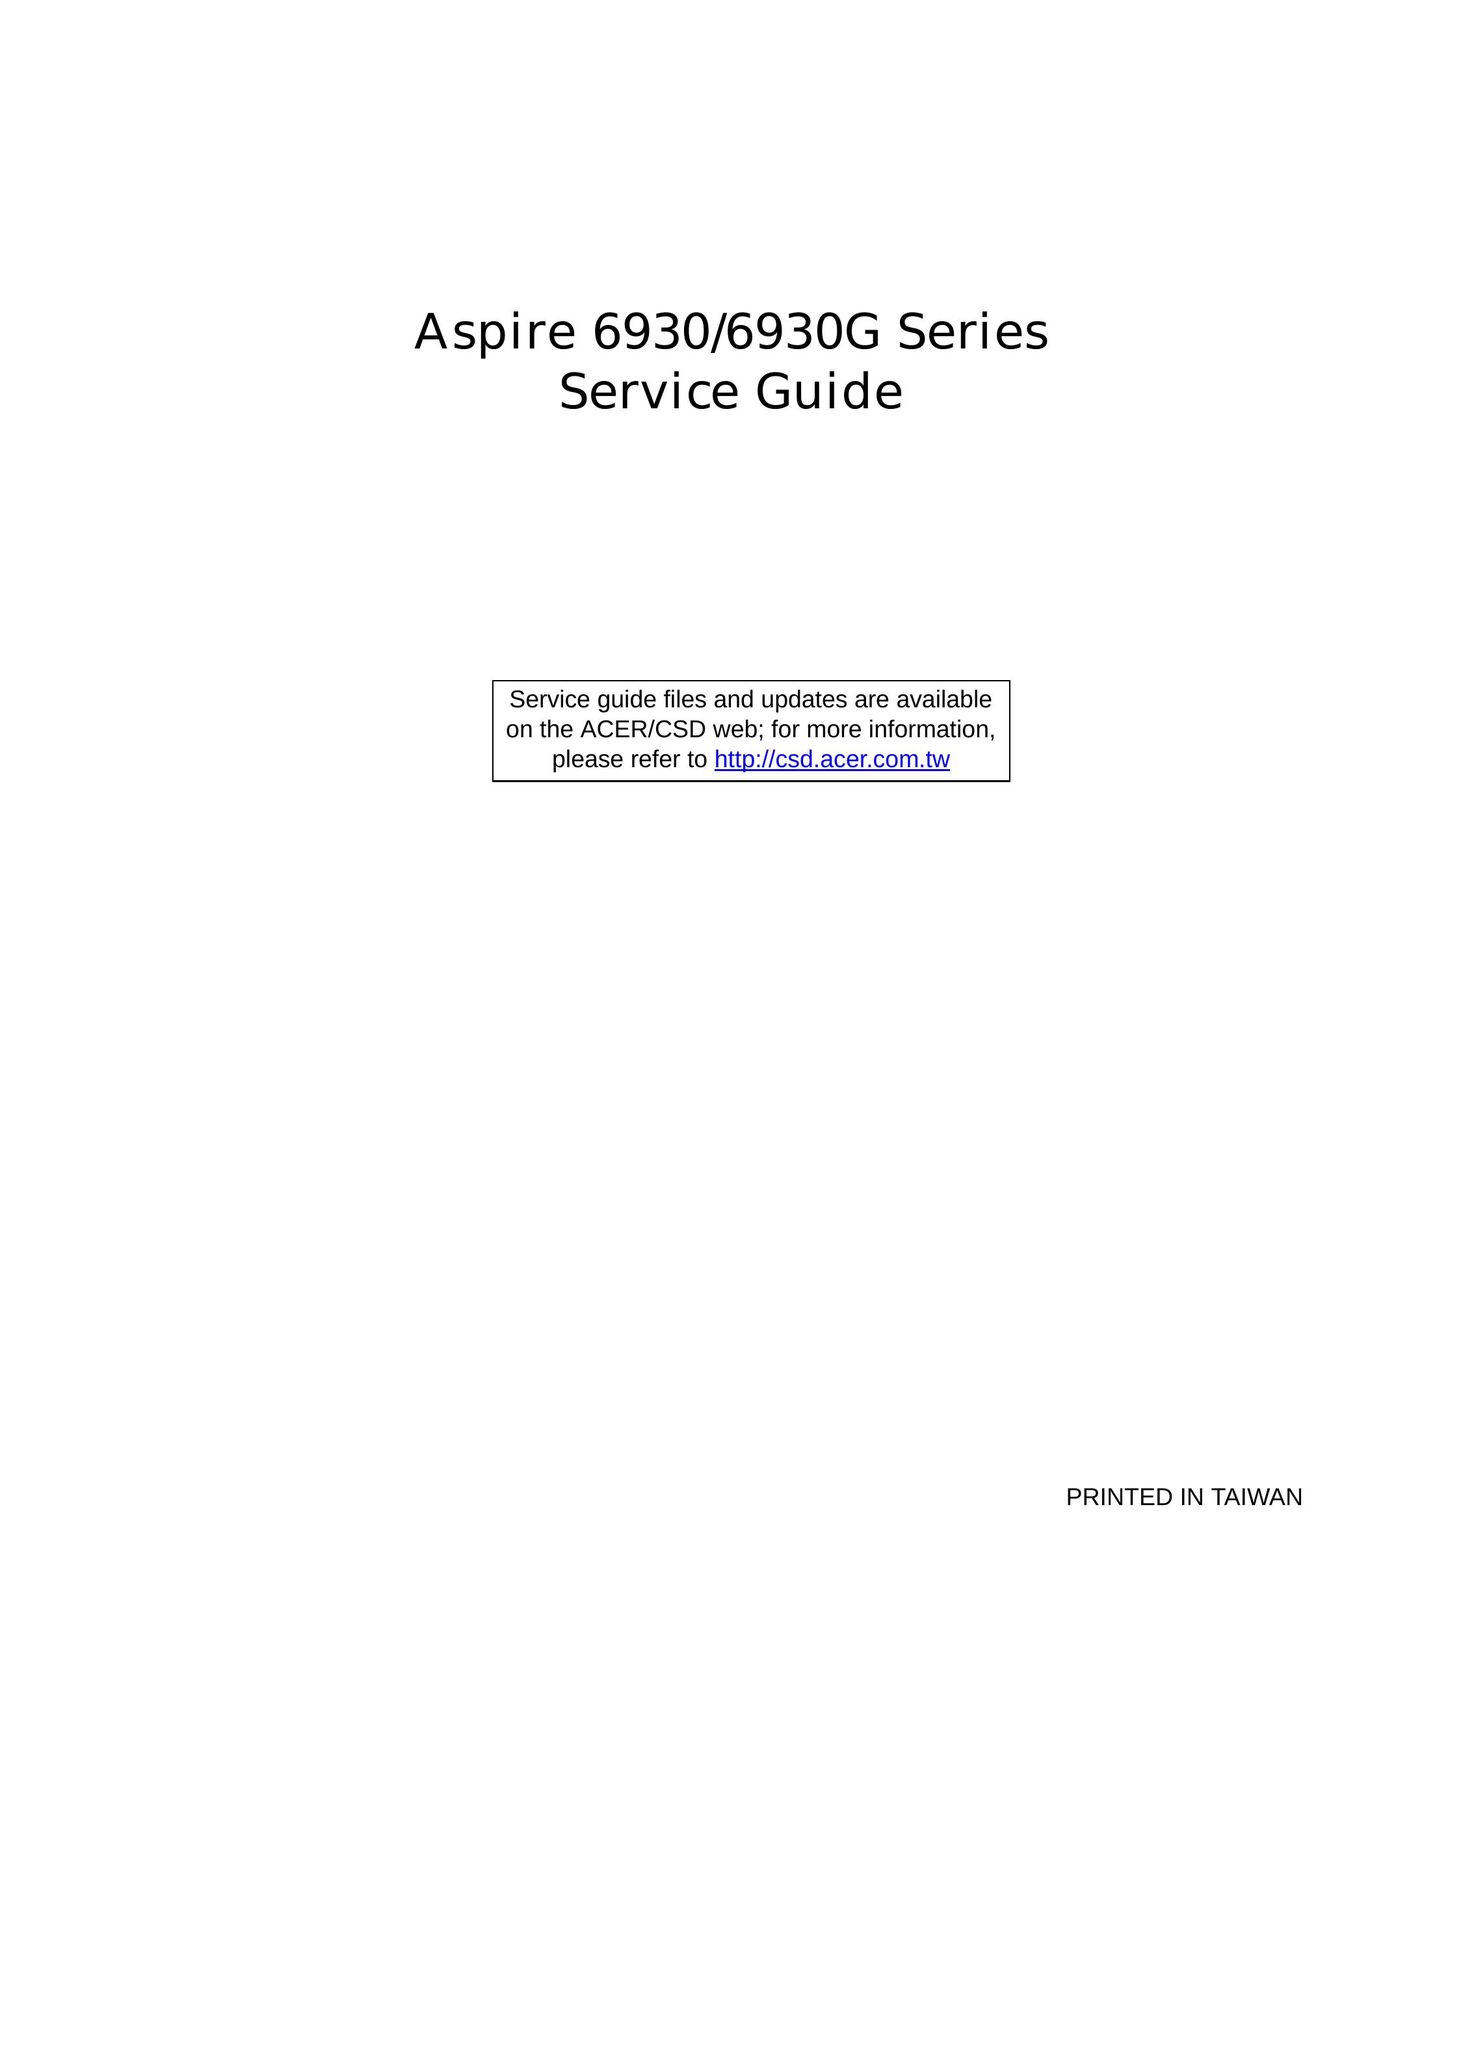 Aspire Digital 6930G Laptop User Manual